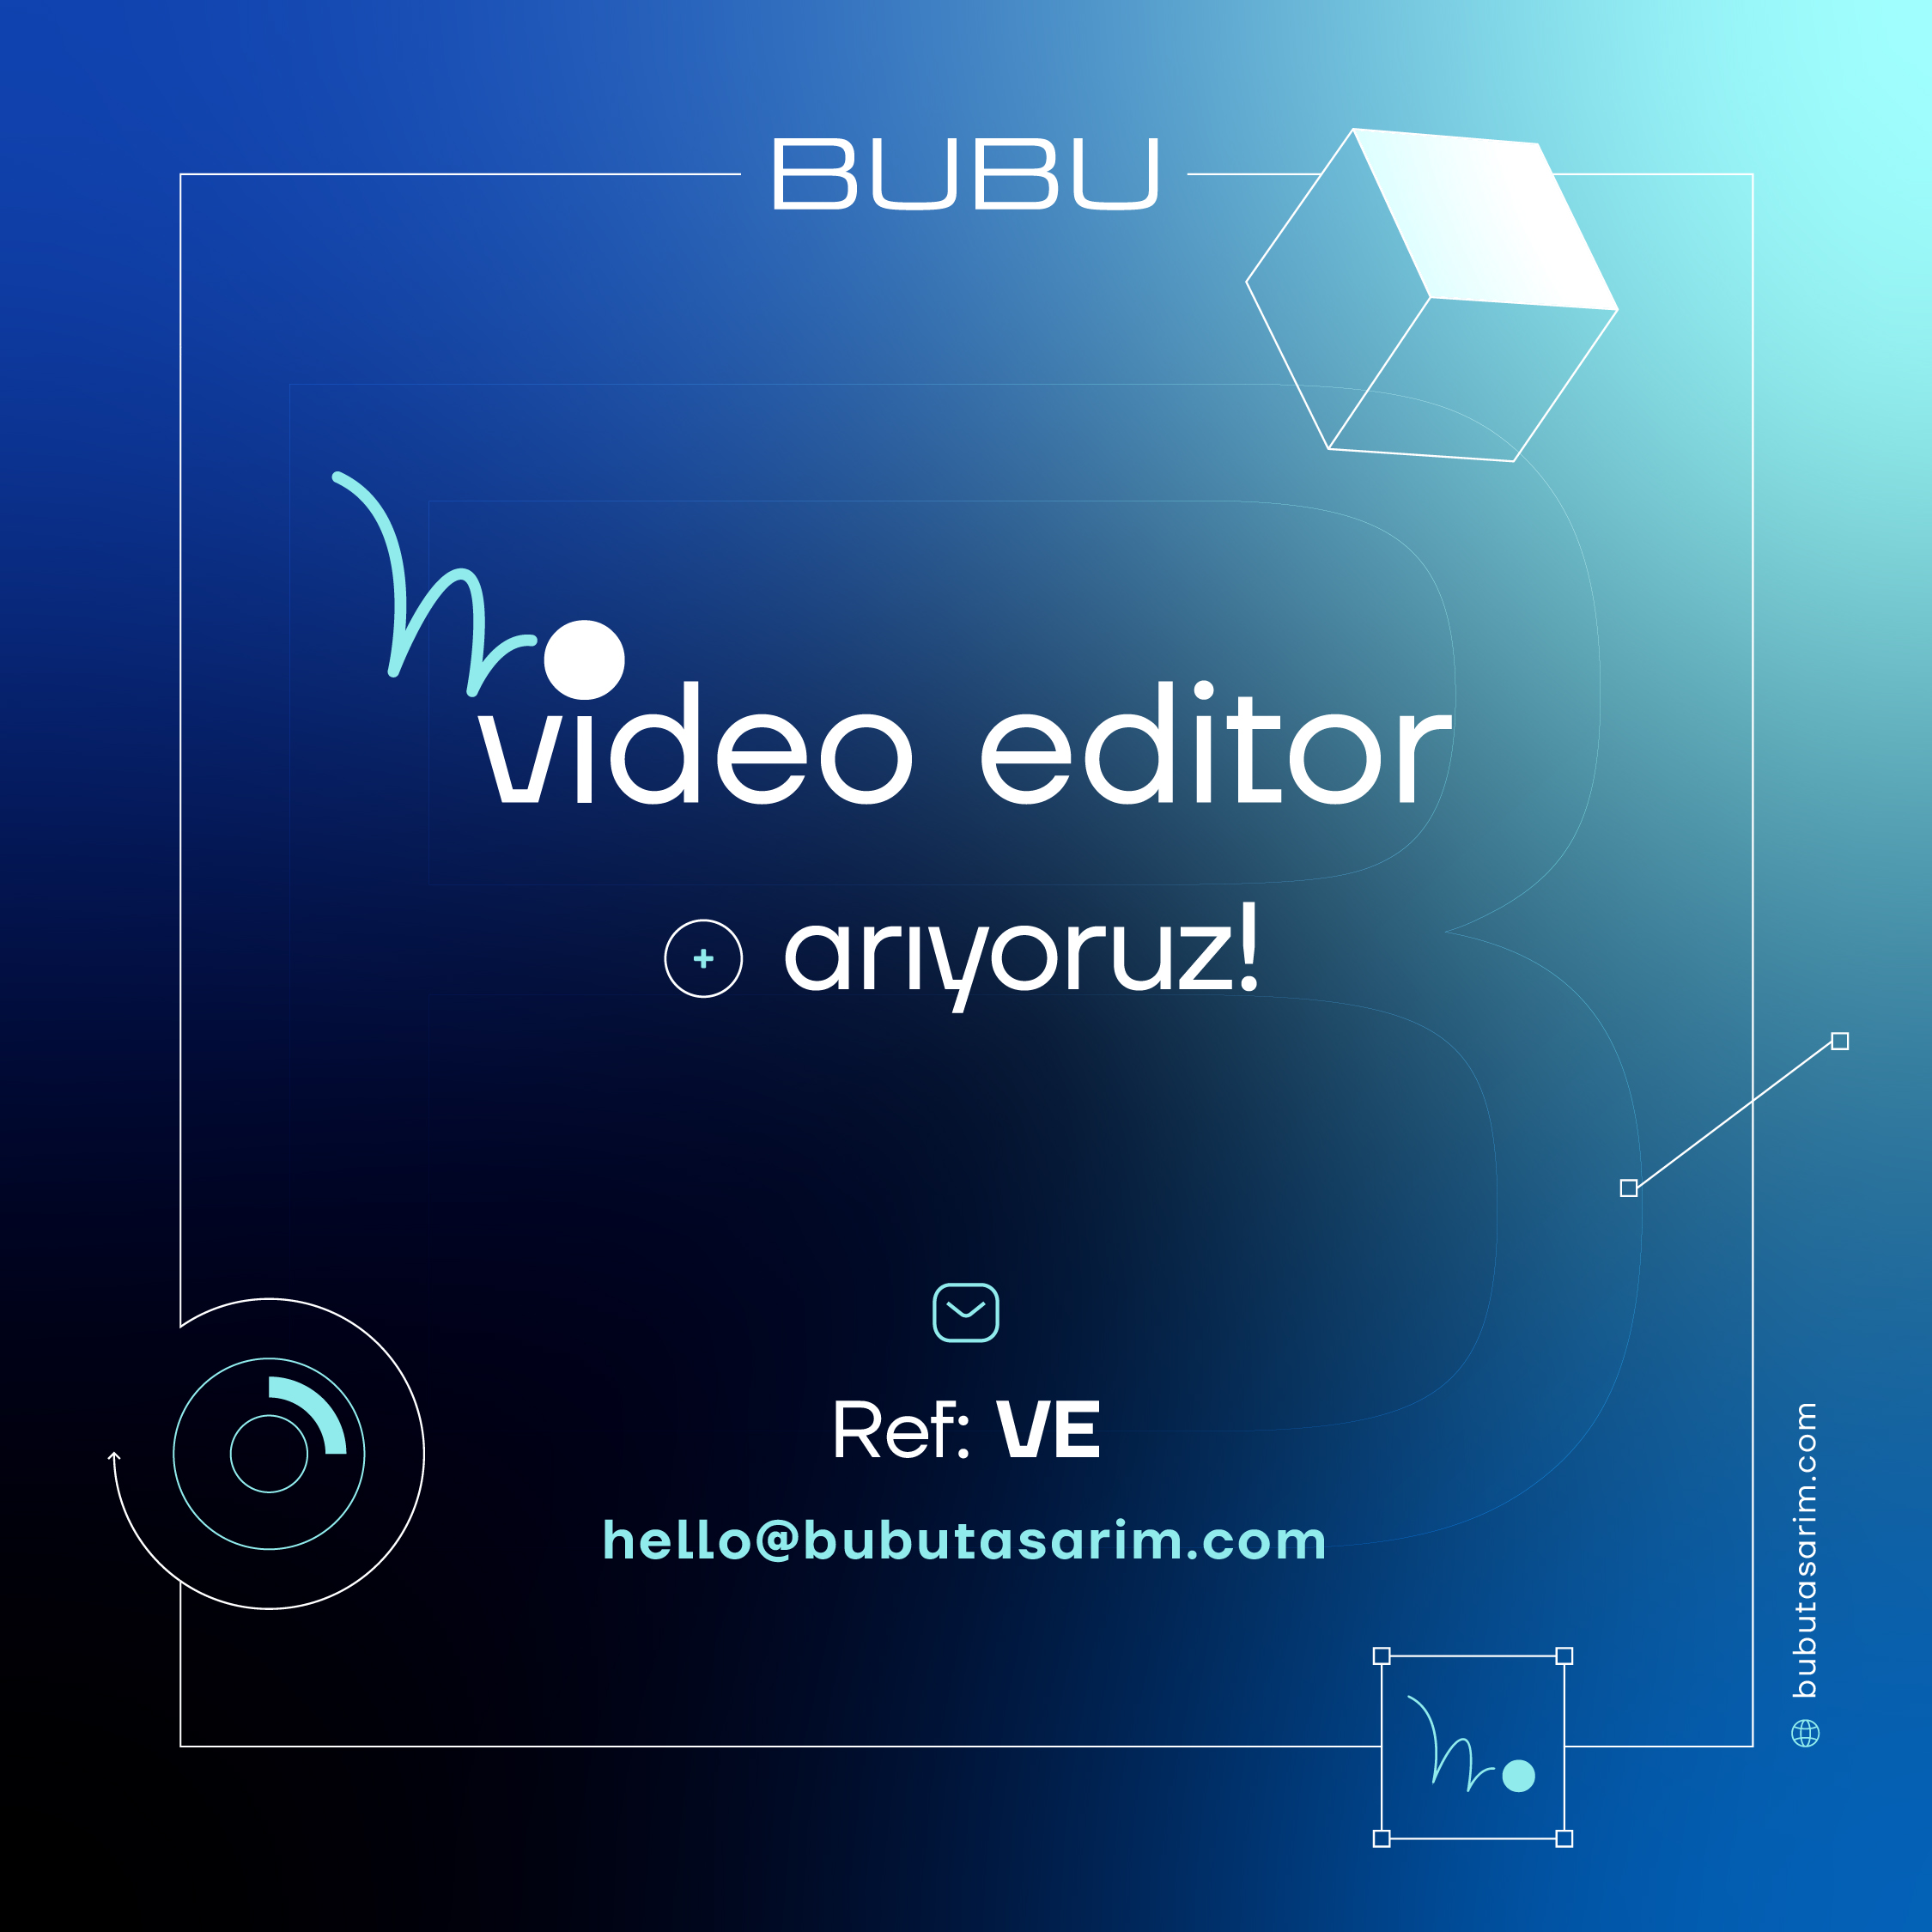 BUBU Video Editor arıyor!